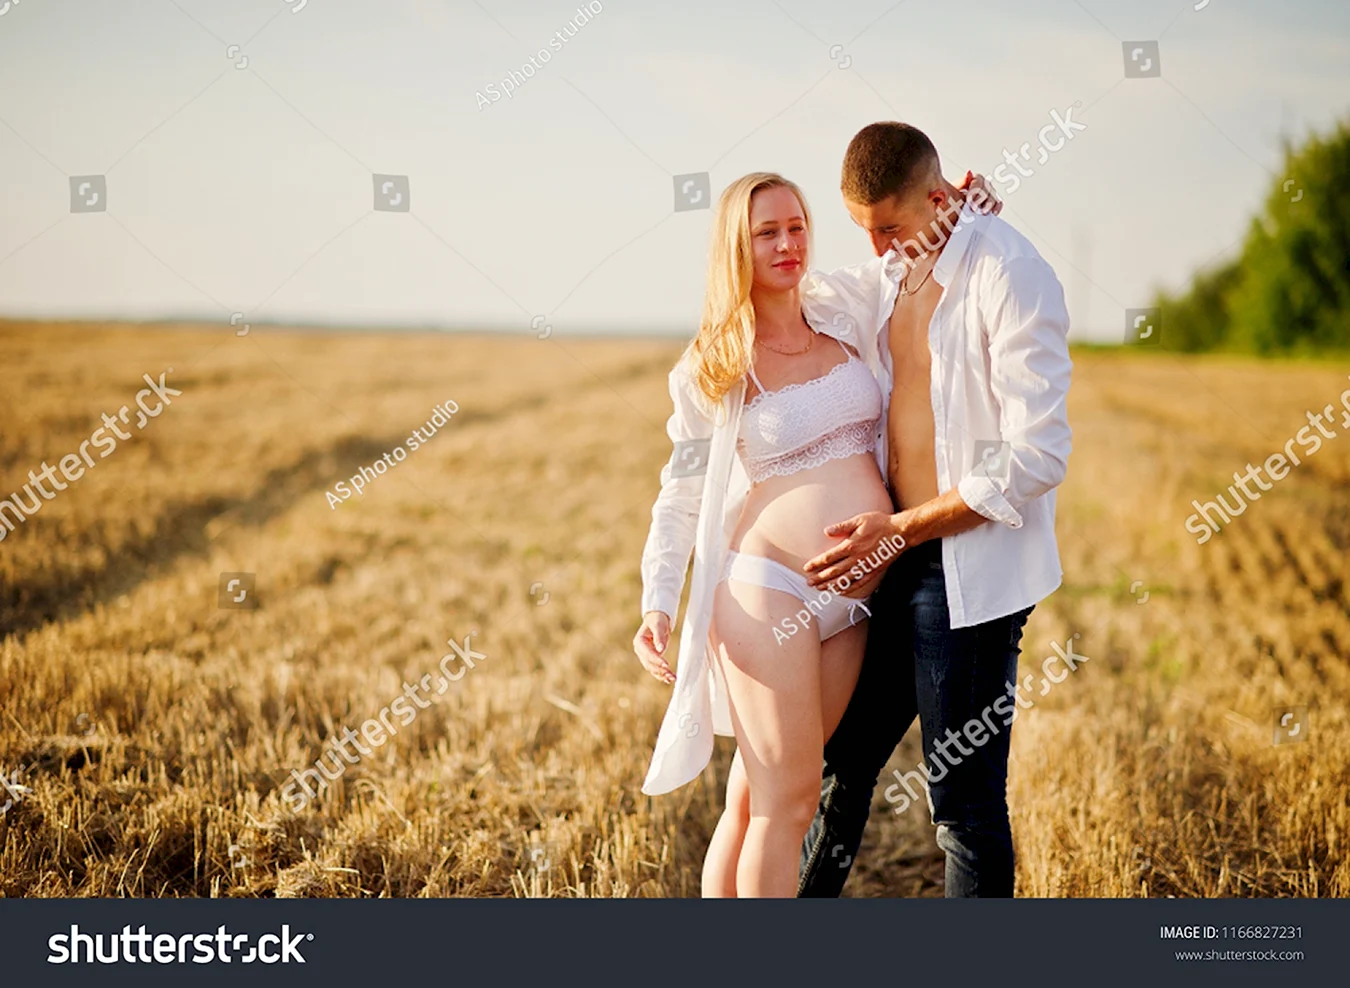 Фотосессия в поле беременной с мужем